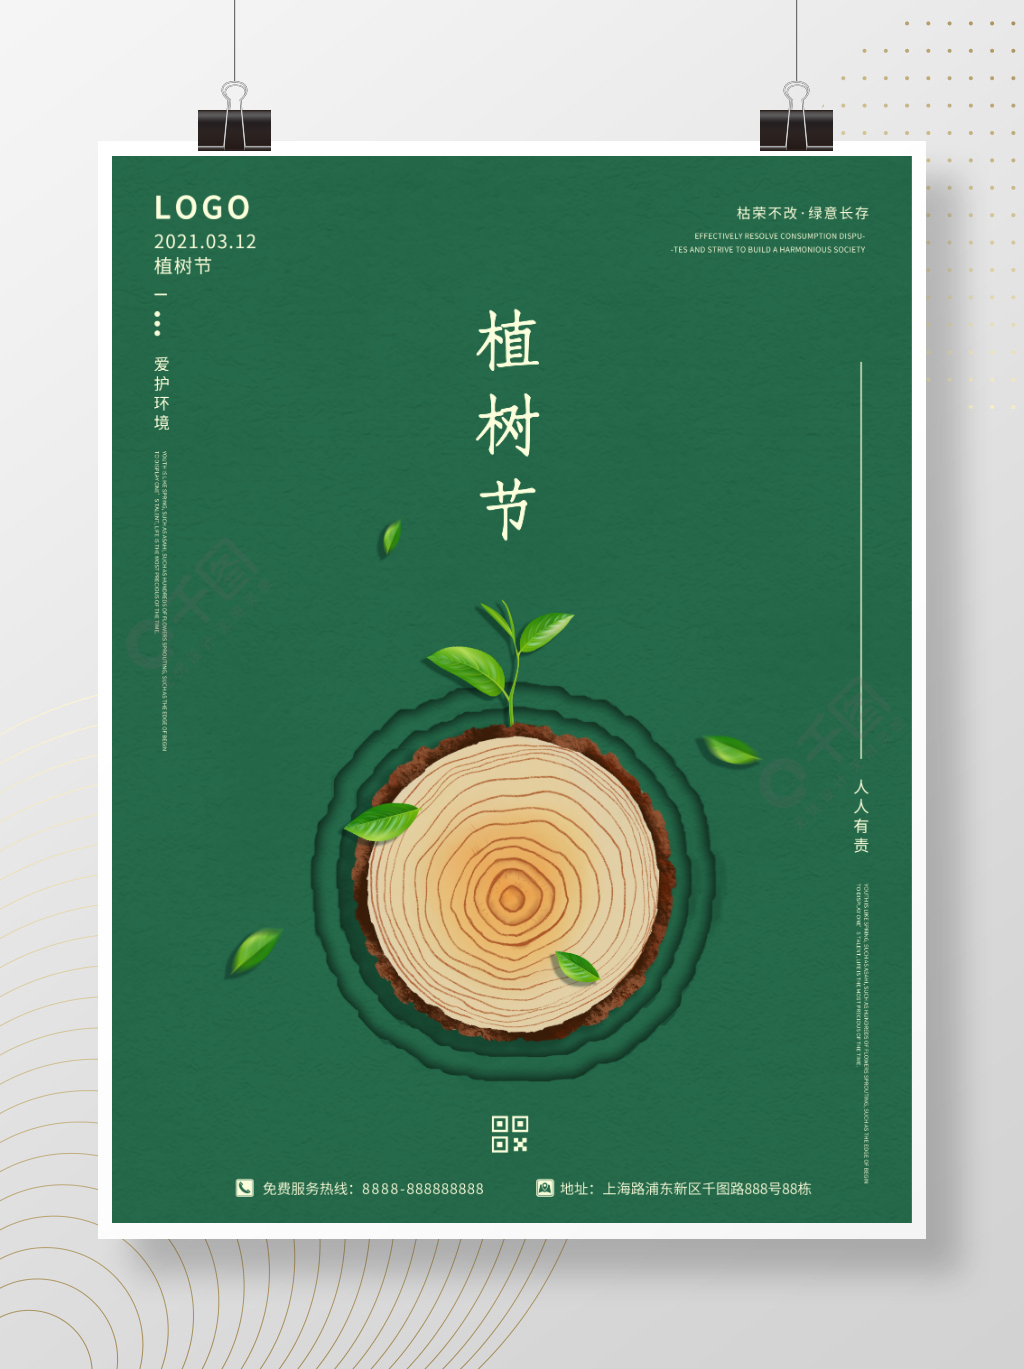 312植树节绿色清新创意简约公益宣传海报半年前发布